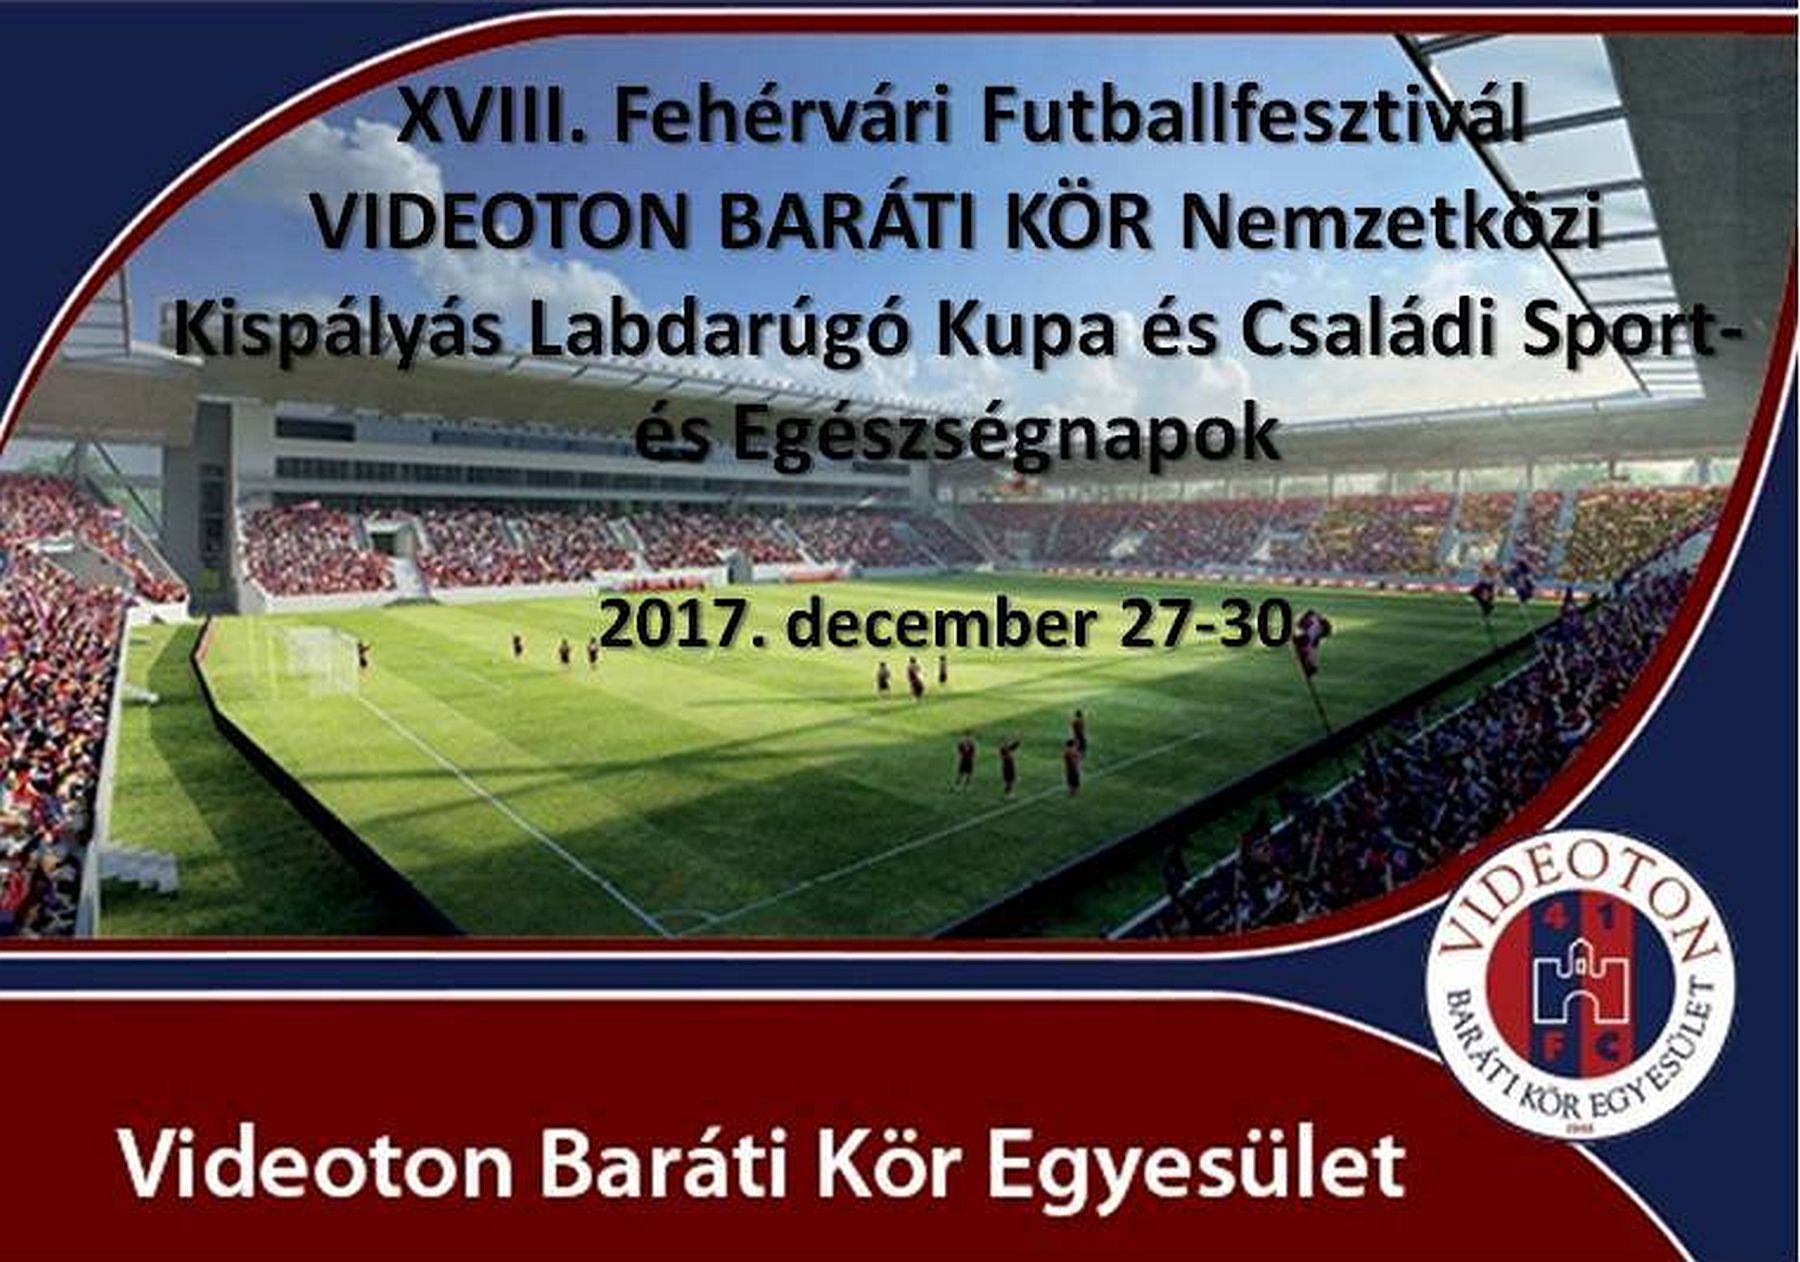 Masterplast Fehérvári Futballfesztivál a két ünnep között